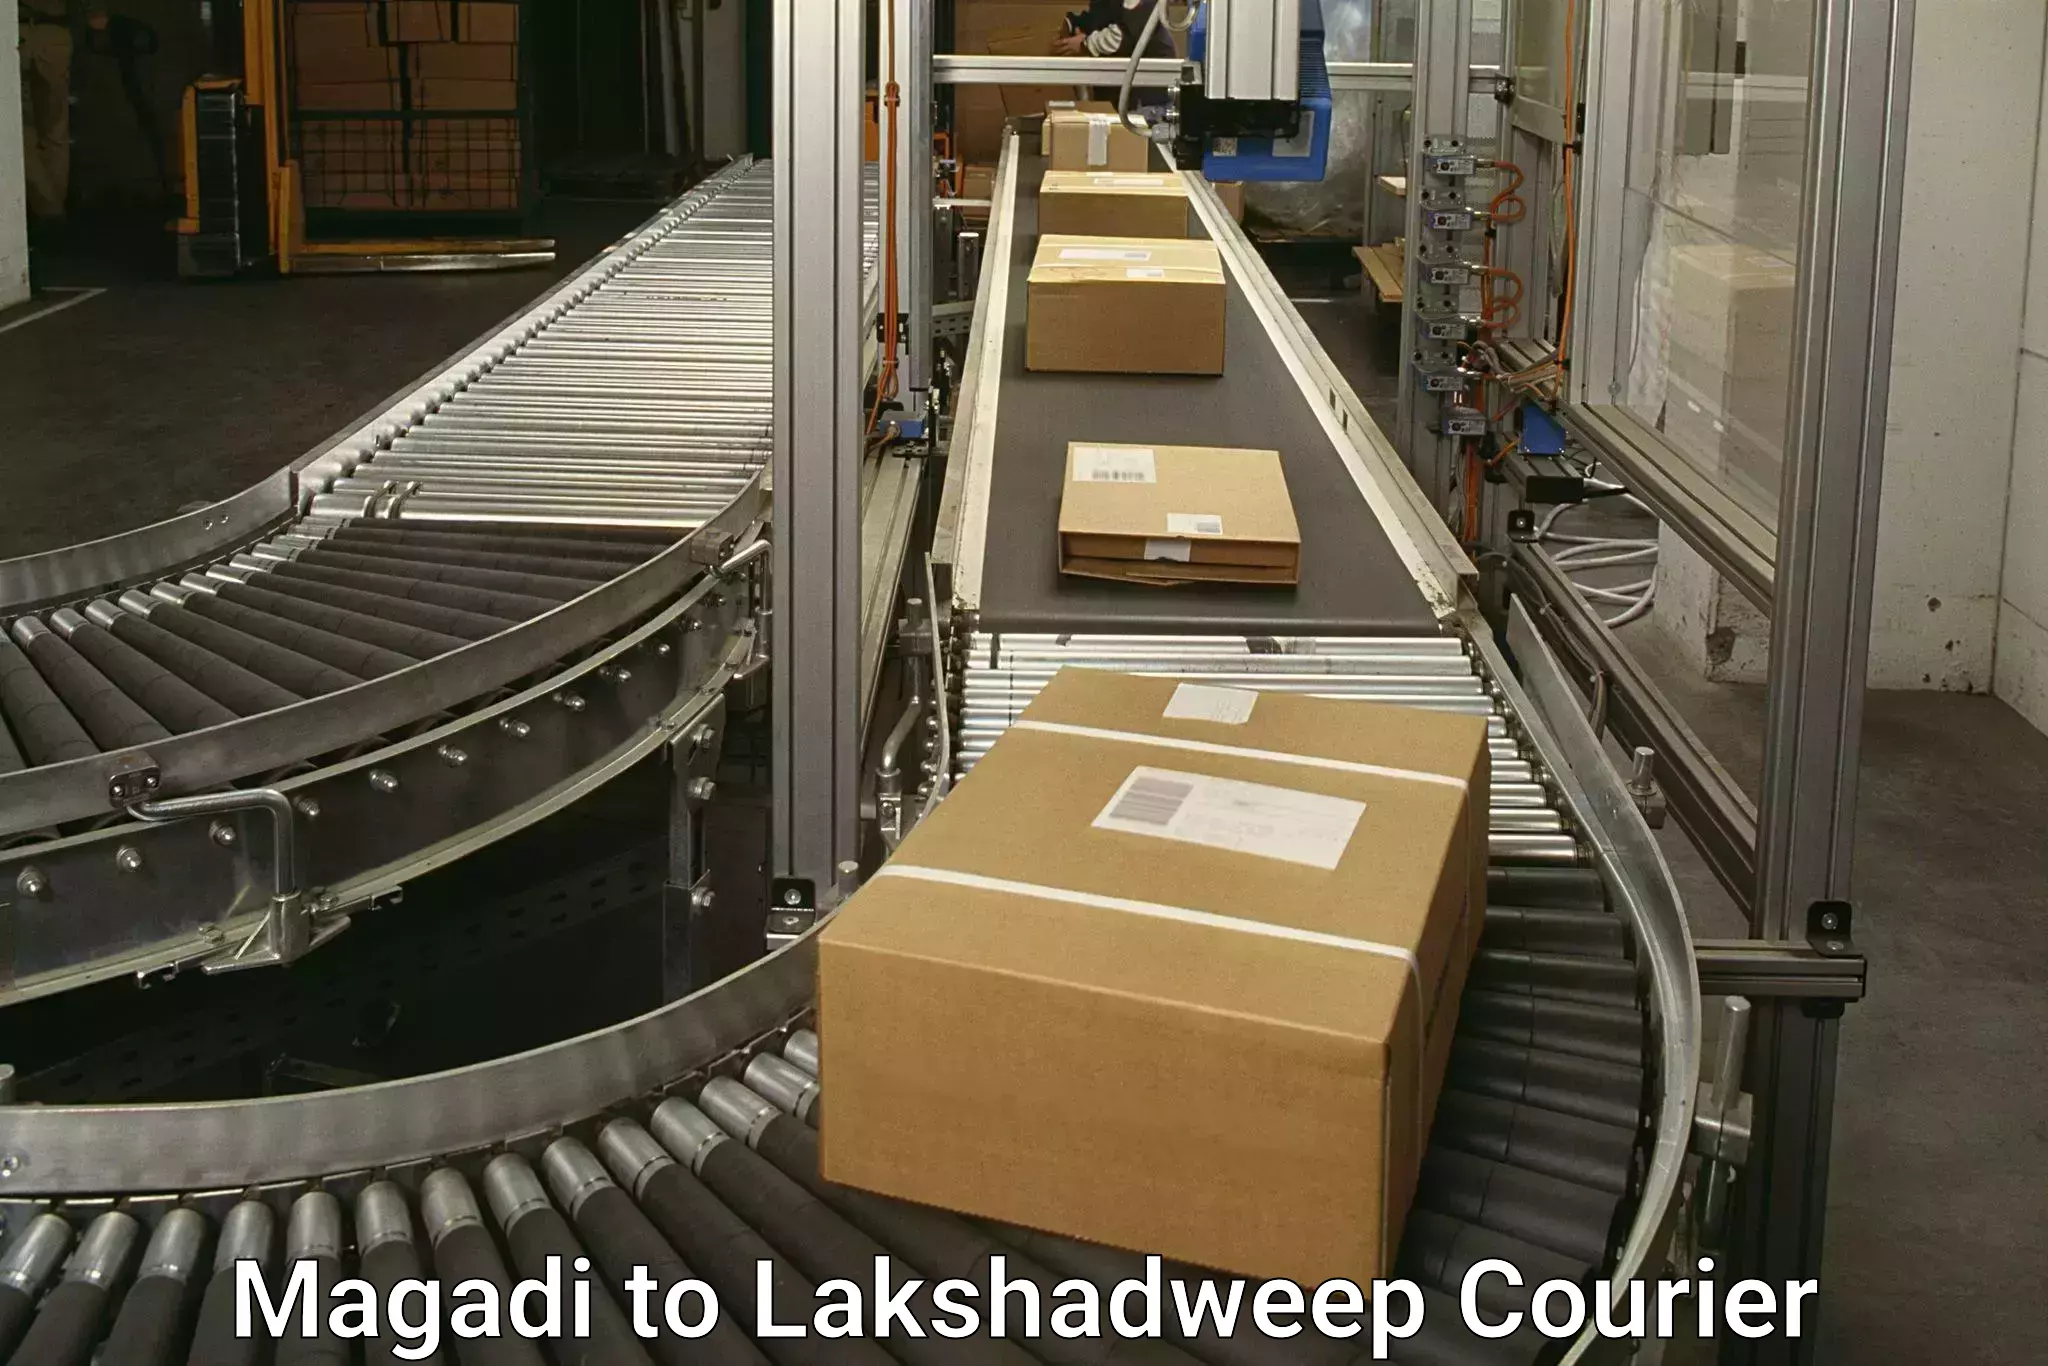 Comprehensive shipping network Magadi to Lakshadweep